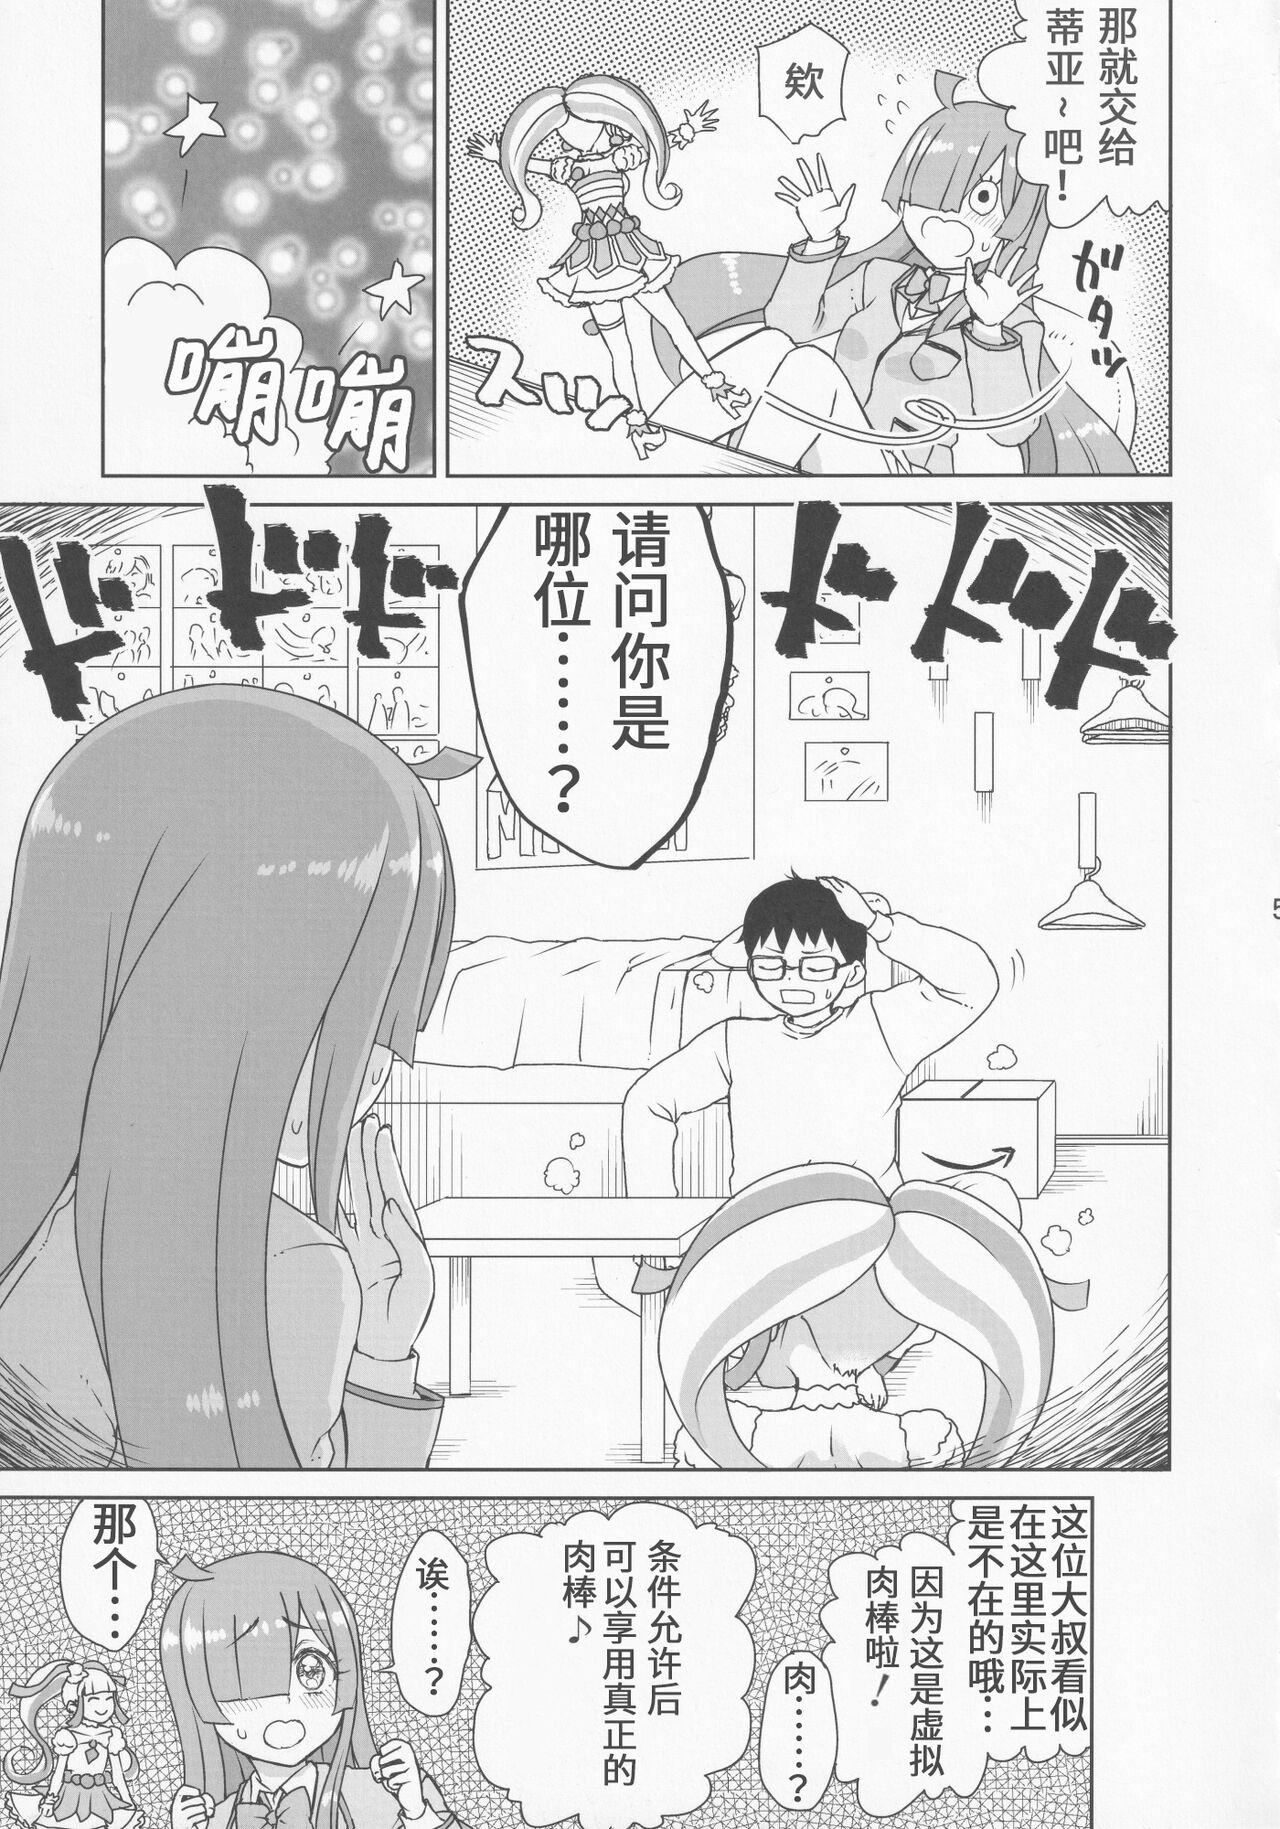 Indoor Kimi no Na wa - Kiratto pri chan Buttfucking - Page 7